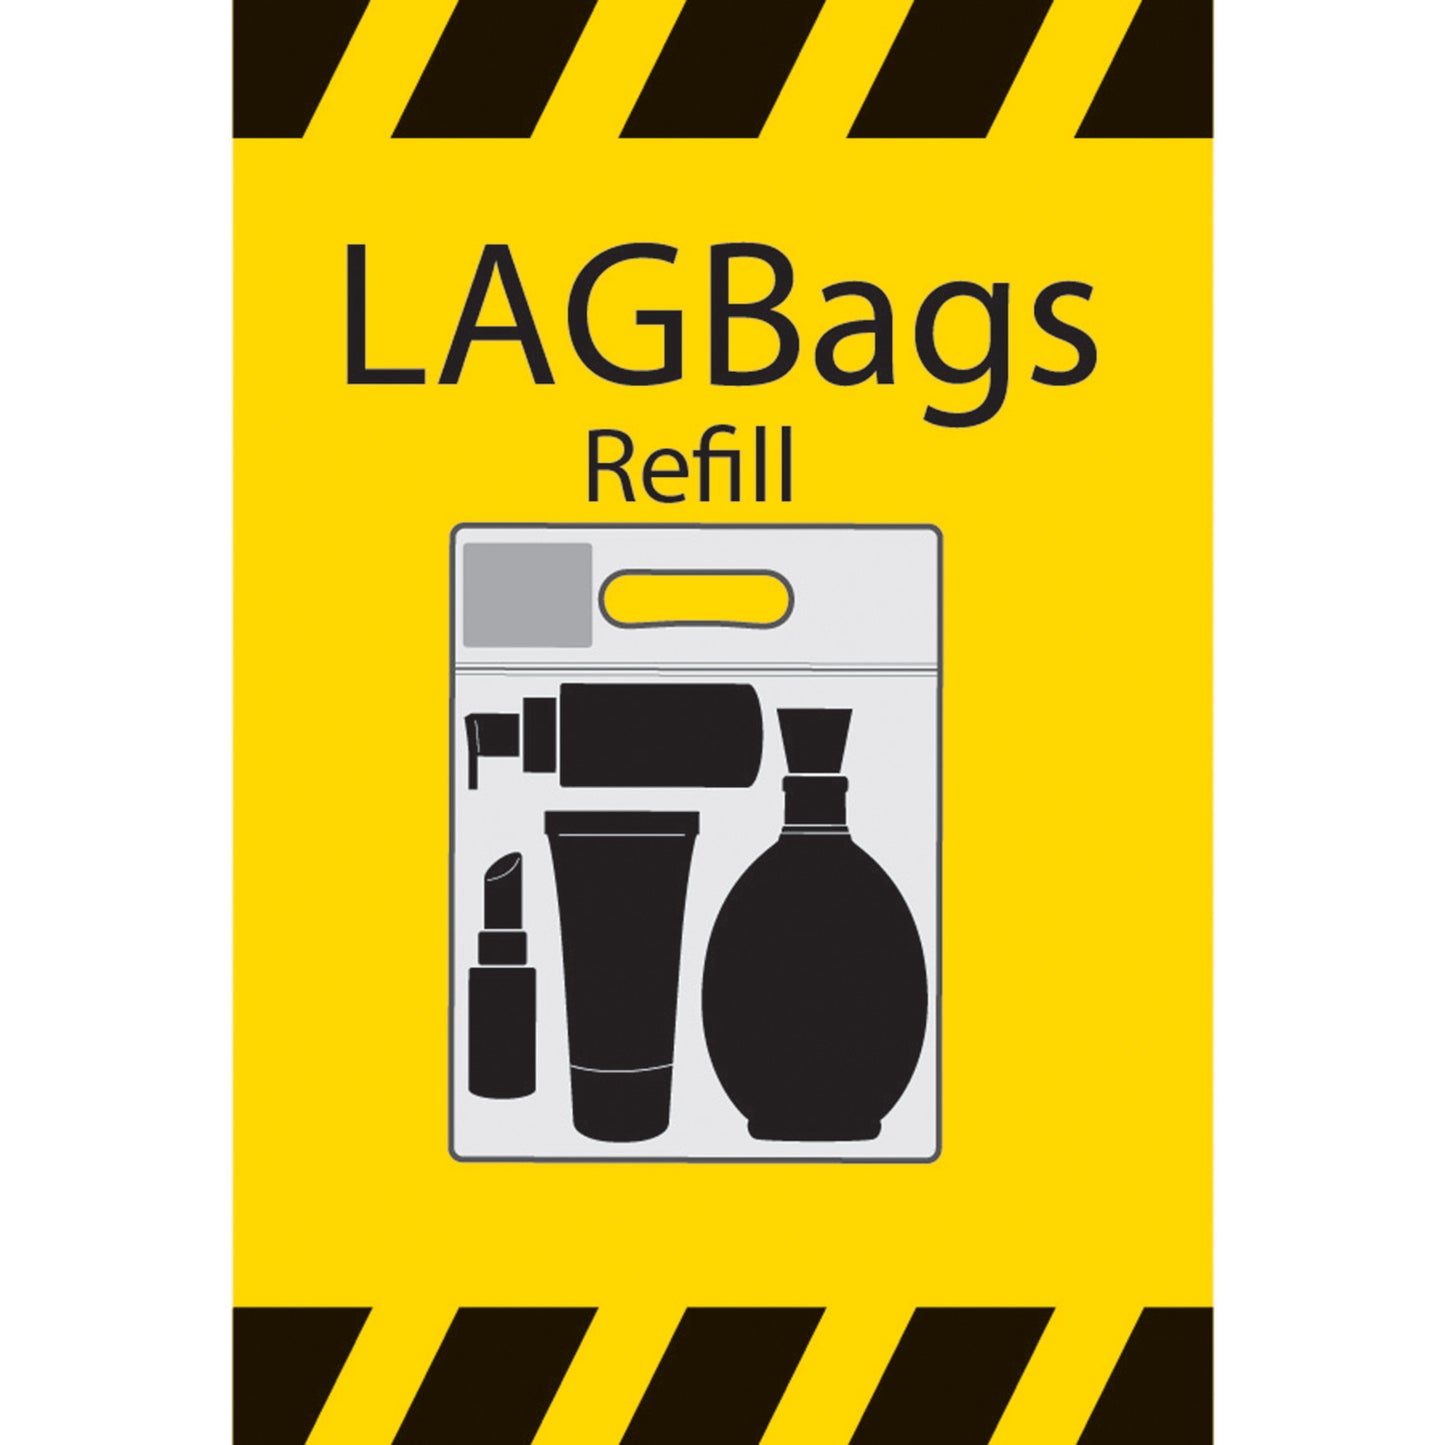 LAG Bag Refill packs